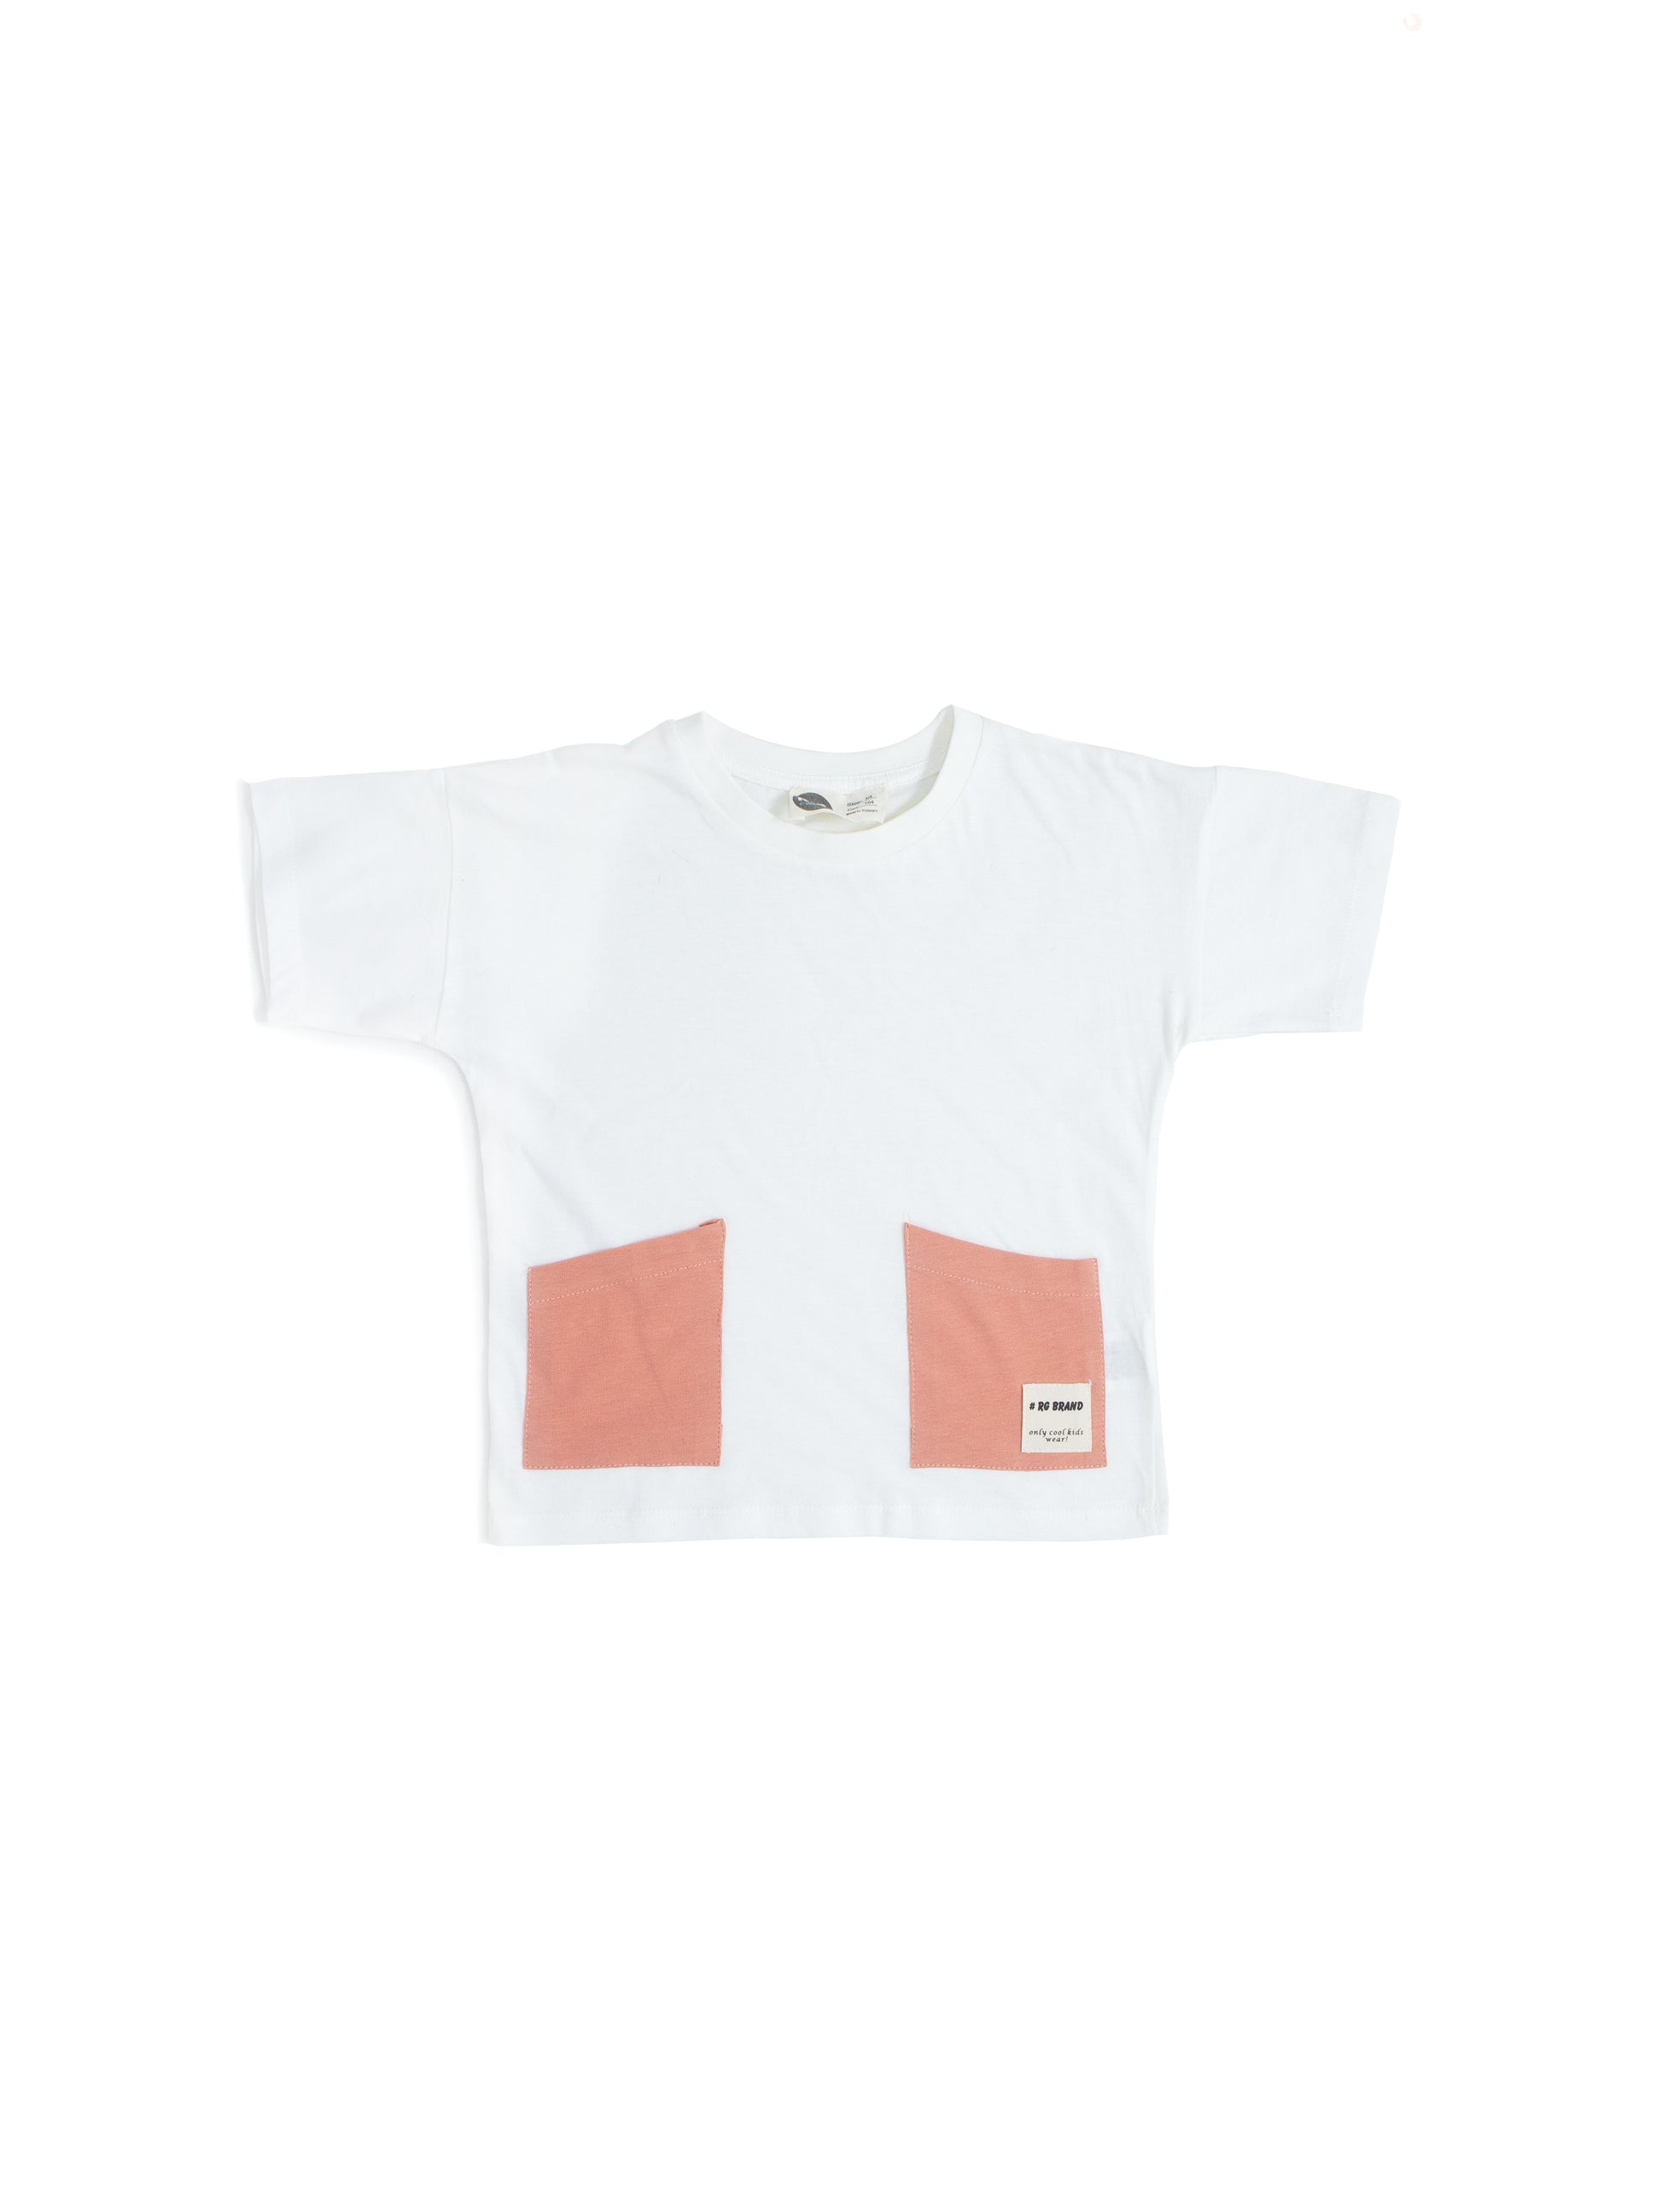 Children's Unisex 100% Cotton Double Pocket T-Shirt